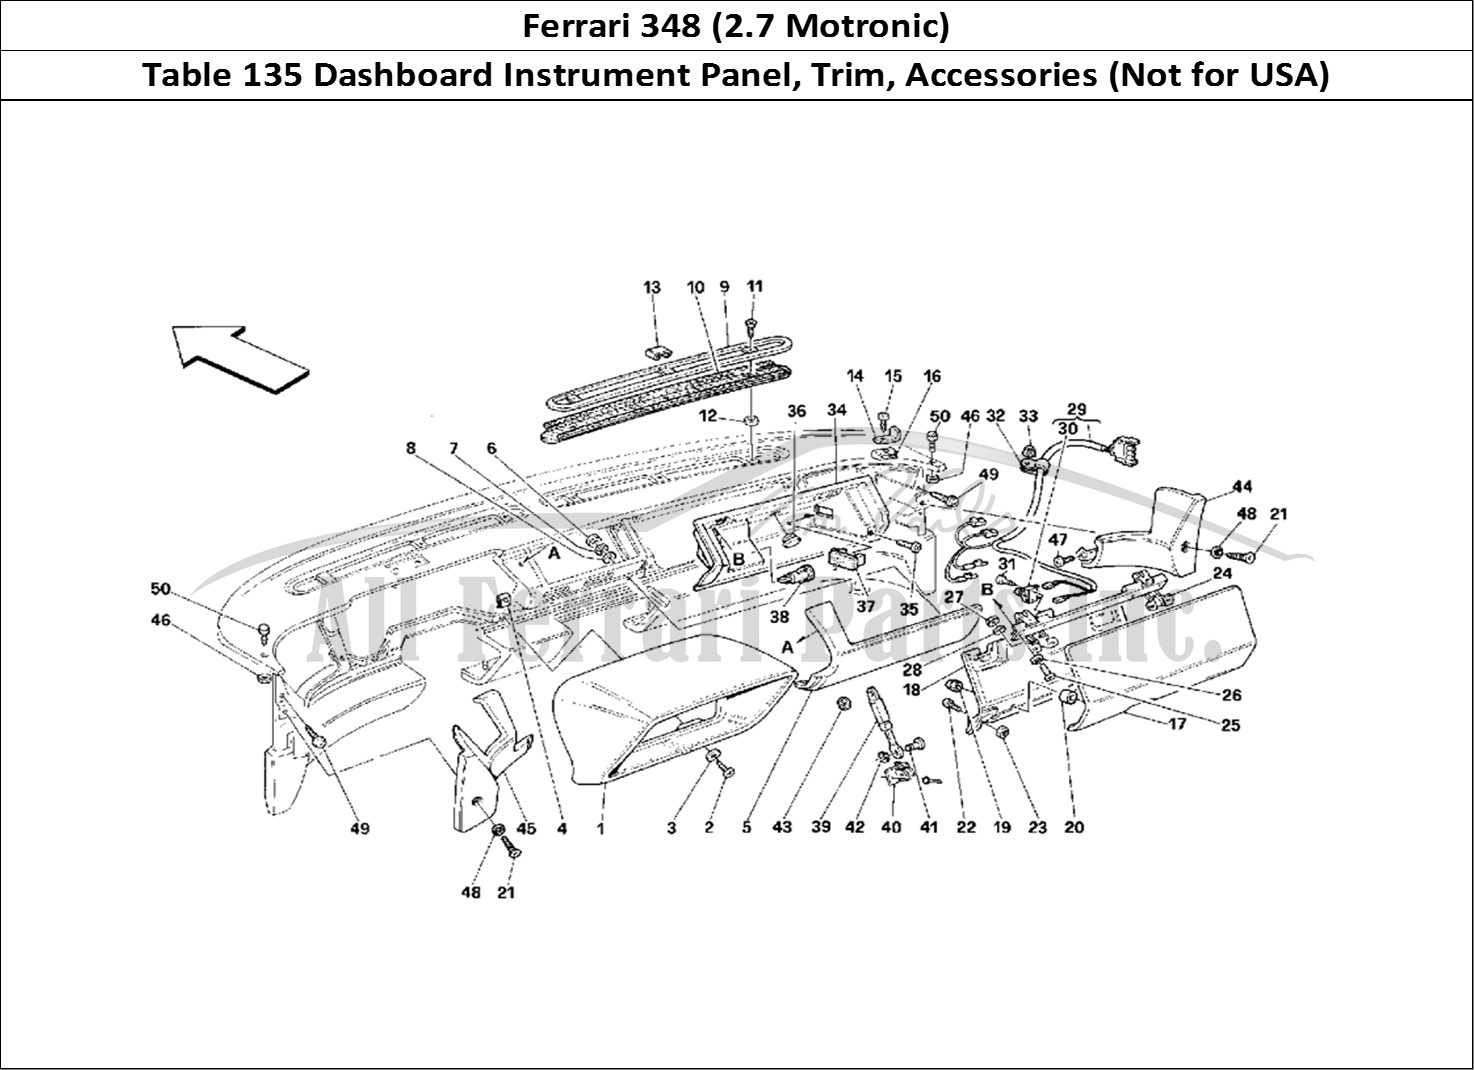 Ferrari Parts Ferrari 348 (2.7 Motronic) Page 135 Dashboard - Trim and Acce